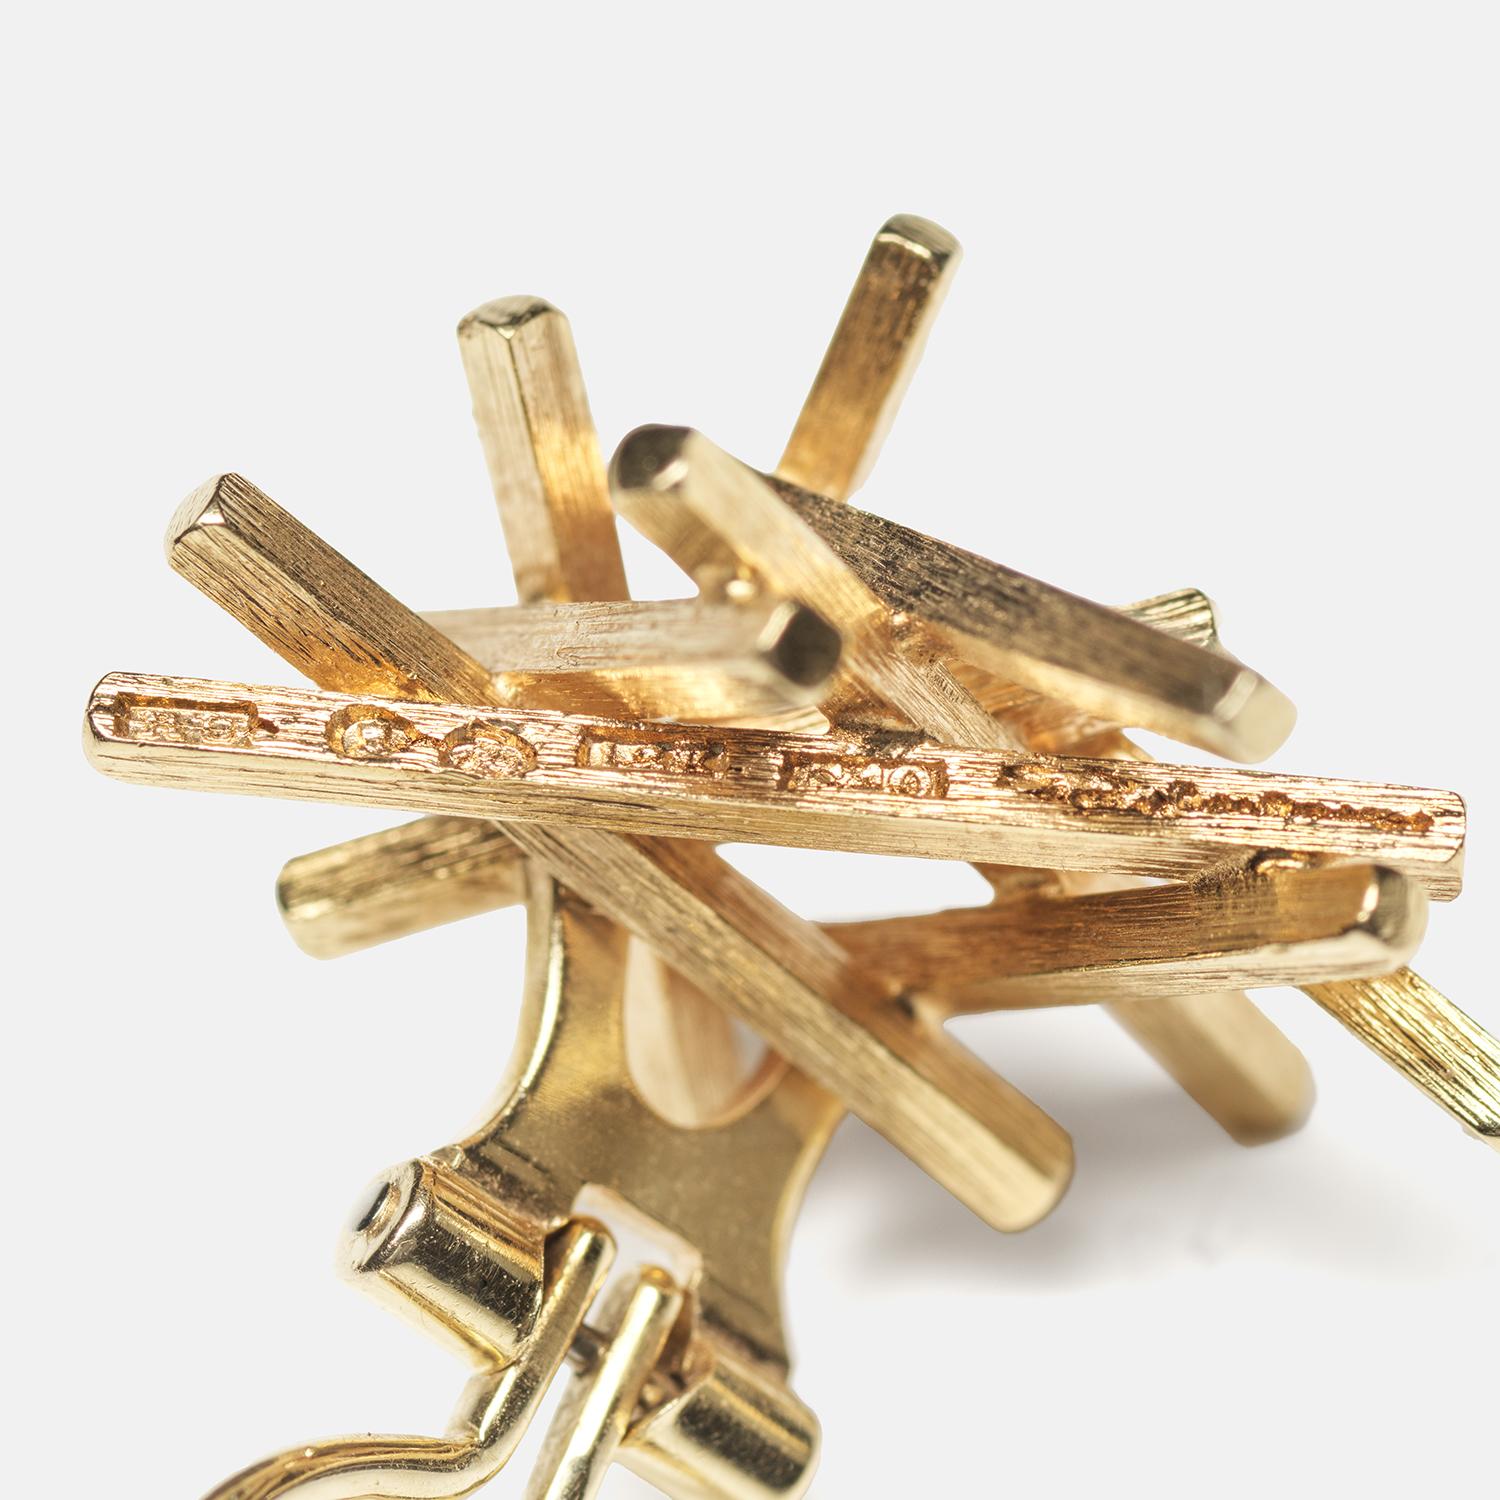 Ces boucles d'oreilles clips en or 18 carats présentent un ensemble dynamique et abstrait de tiges d'or texturées qui créent un motif complexe ressemblant à un nid. L'or a une finition riche et brossée qui ajoute de la profondeur et un doux éclat